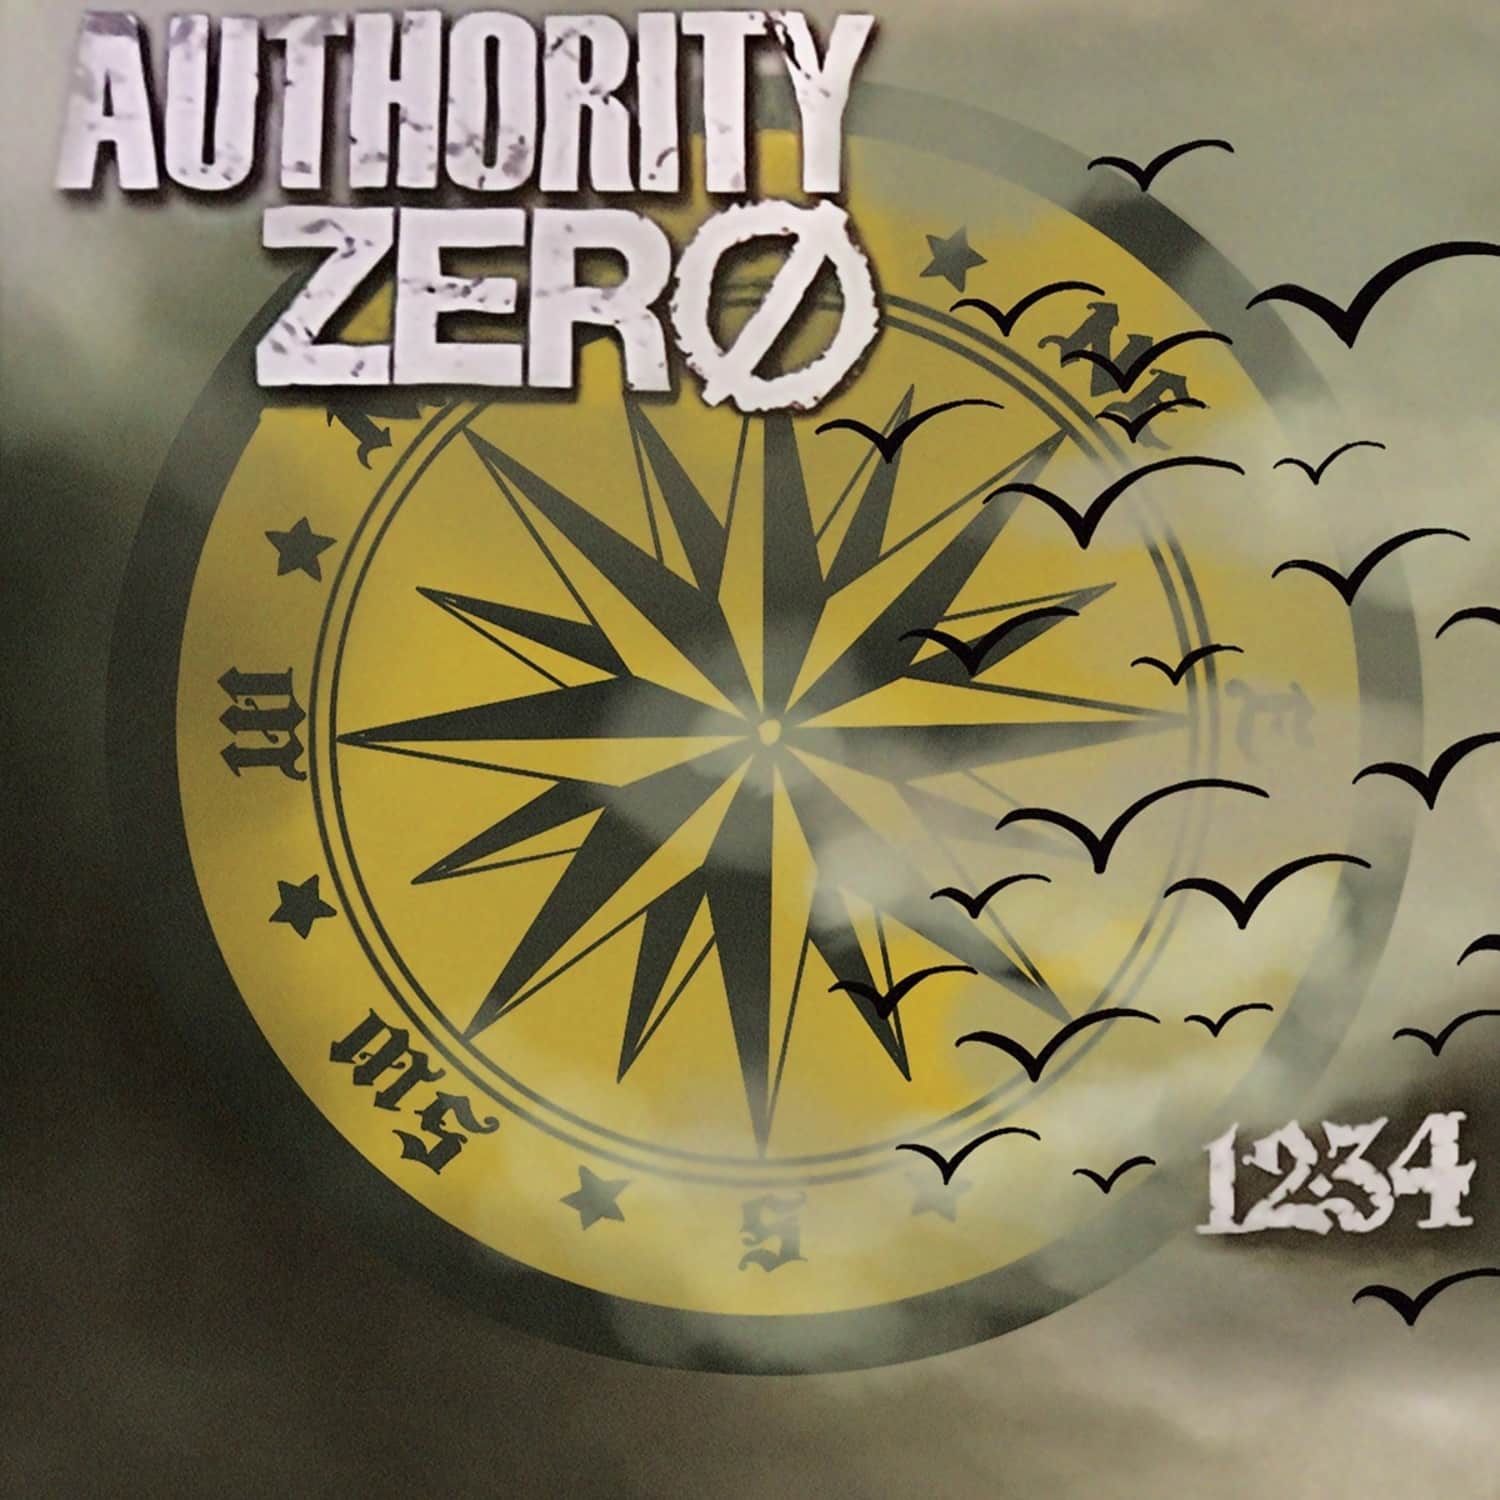 Authority Zero - 12:34 